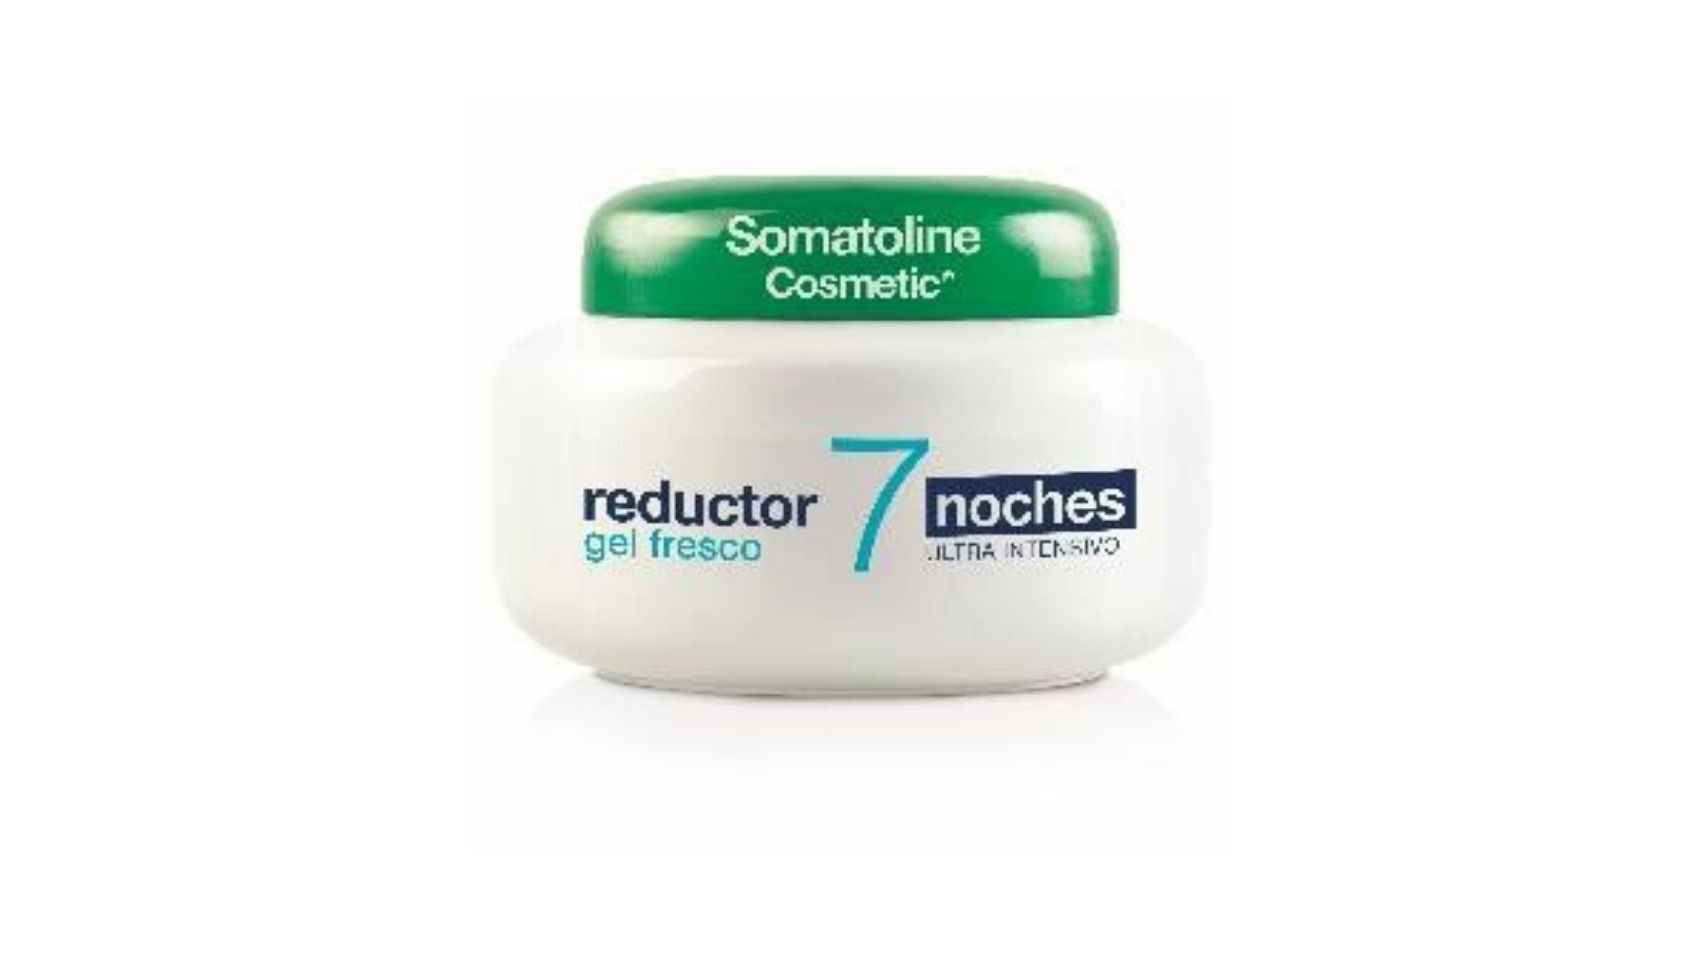 La crema de Somatoline Cosmetics ayuda a reducir la grasa acumulada en siete días.